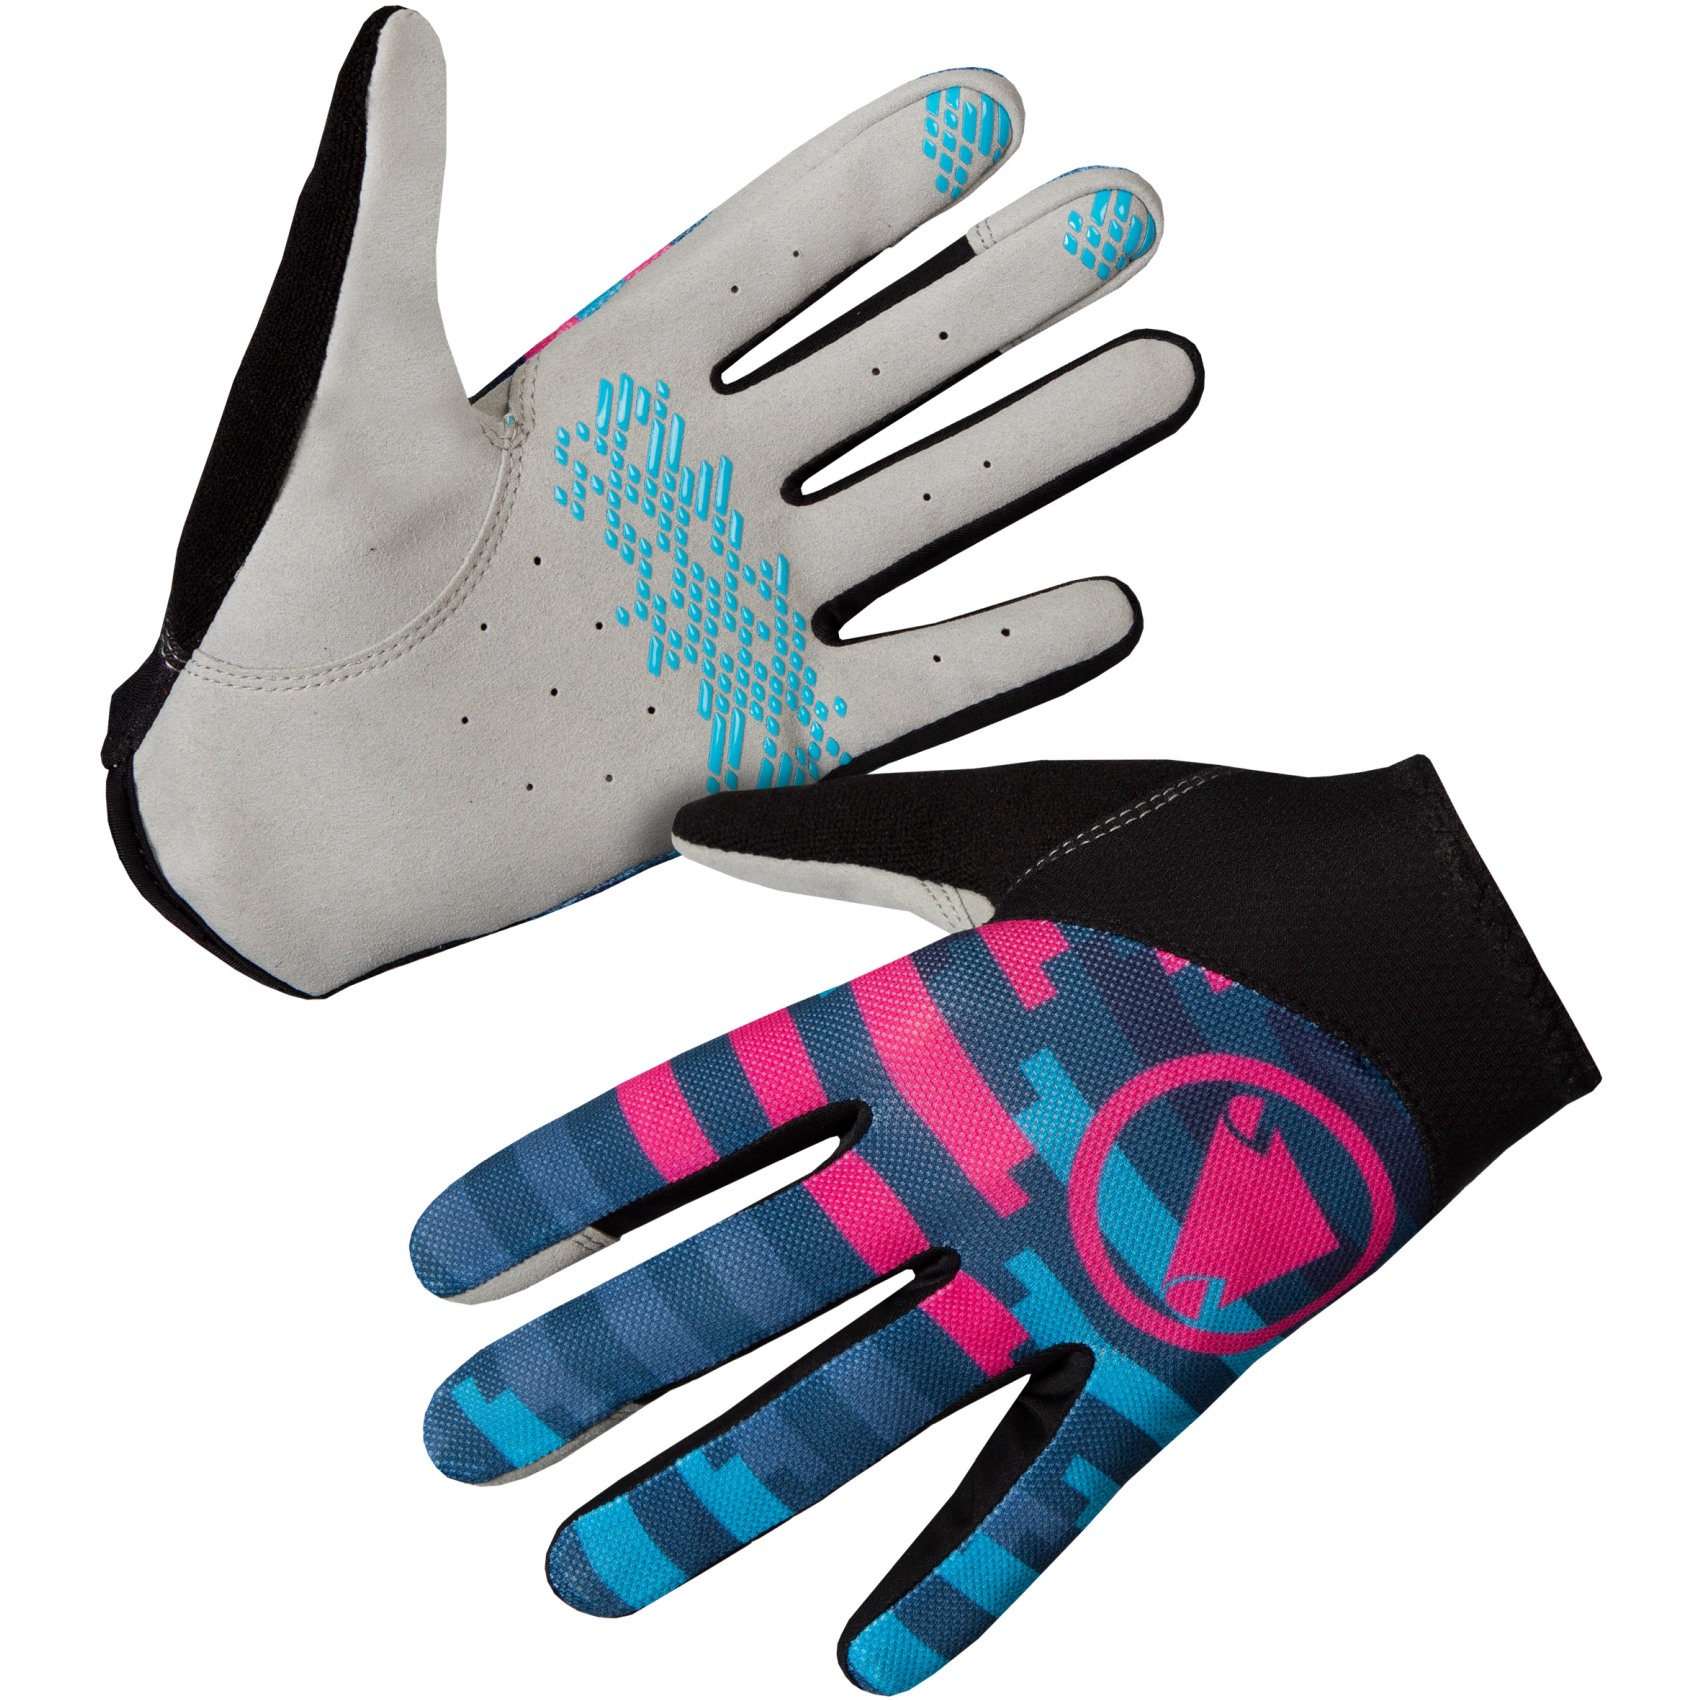 Produktbild von Endura Hummvee Lite Icon Vollfinger-Handschuhe - ink blue